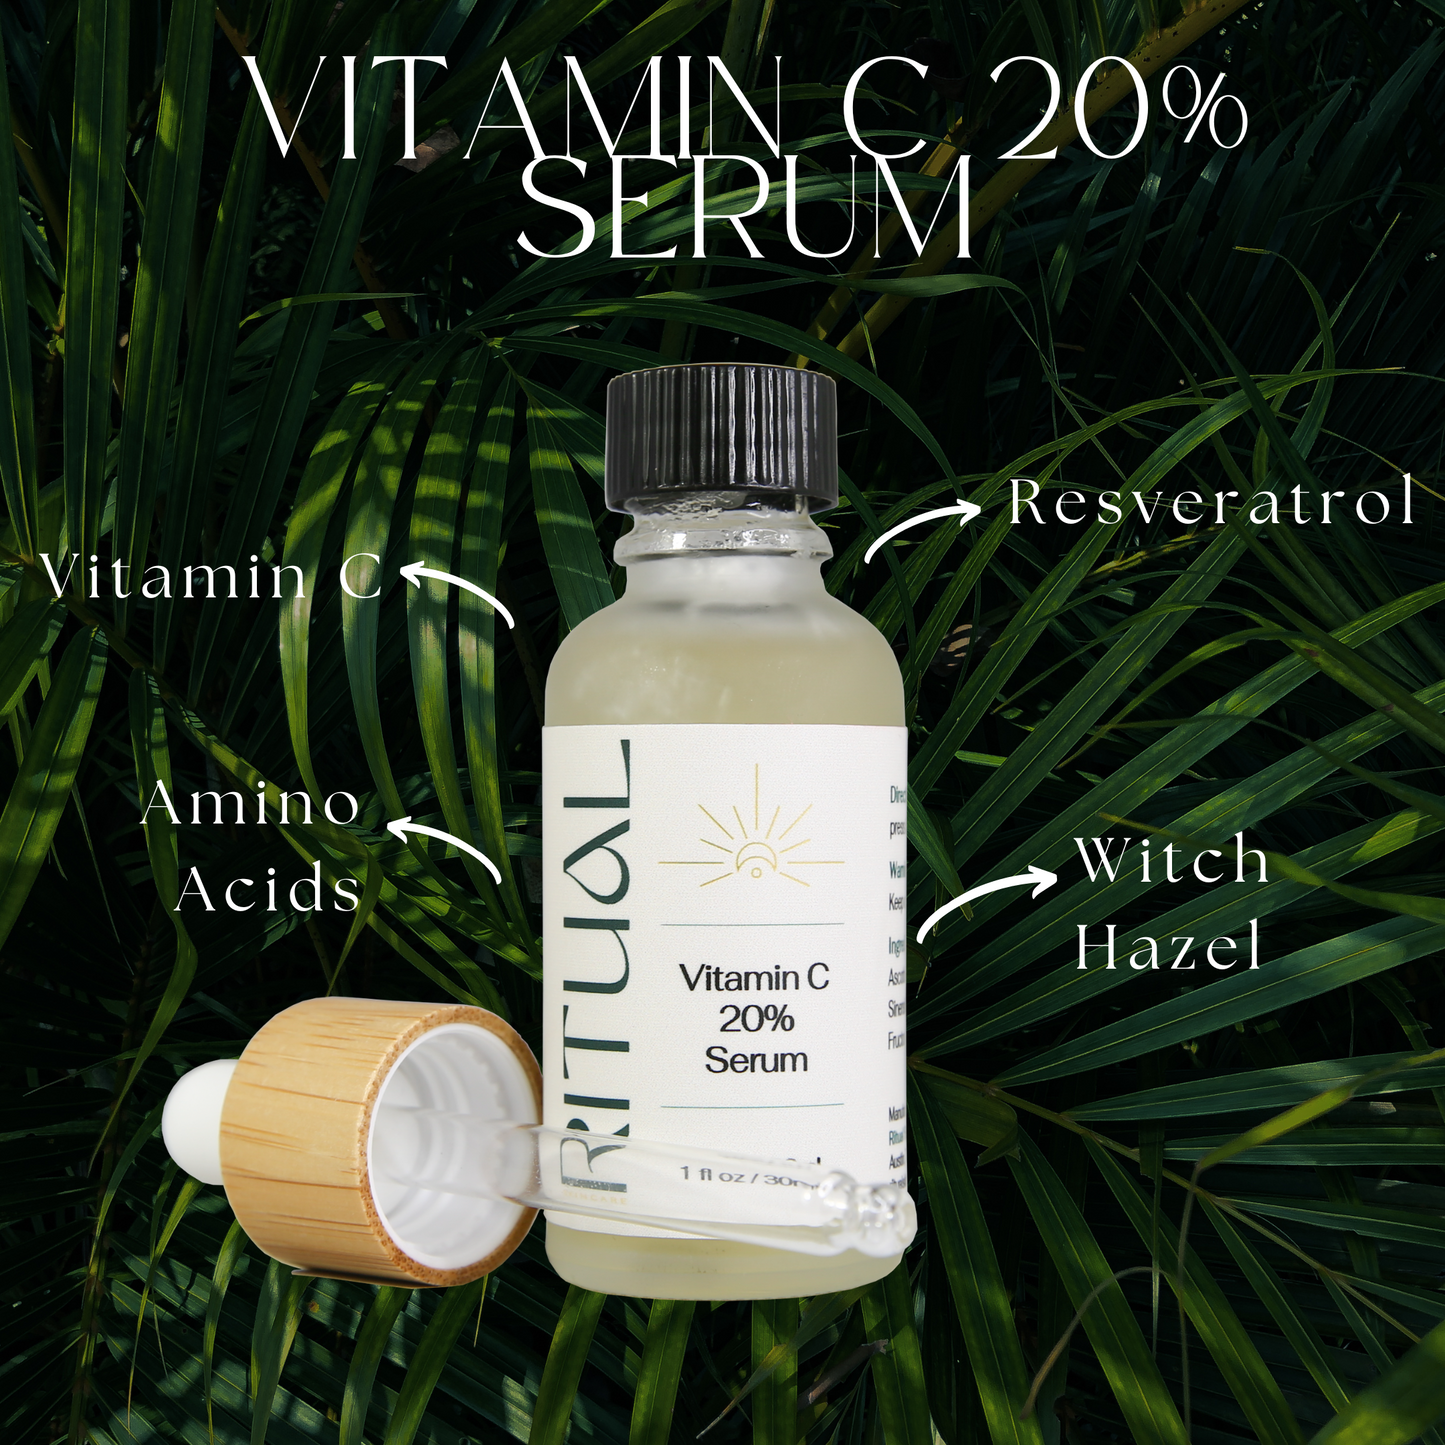 20% Vitamin C Serum